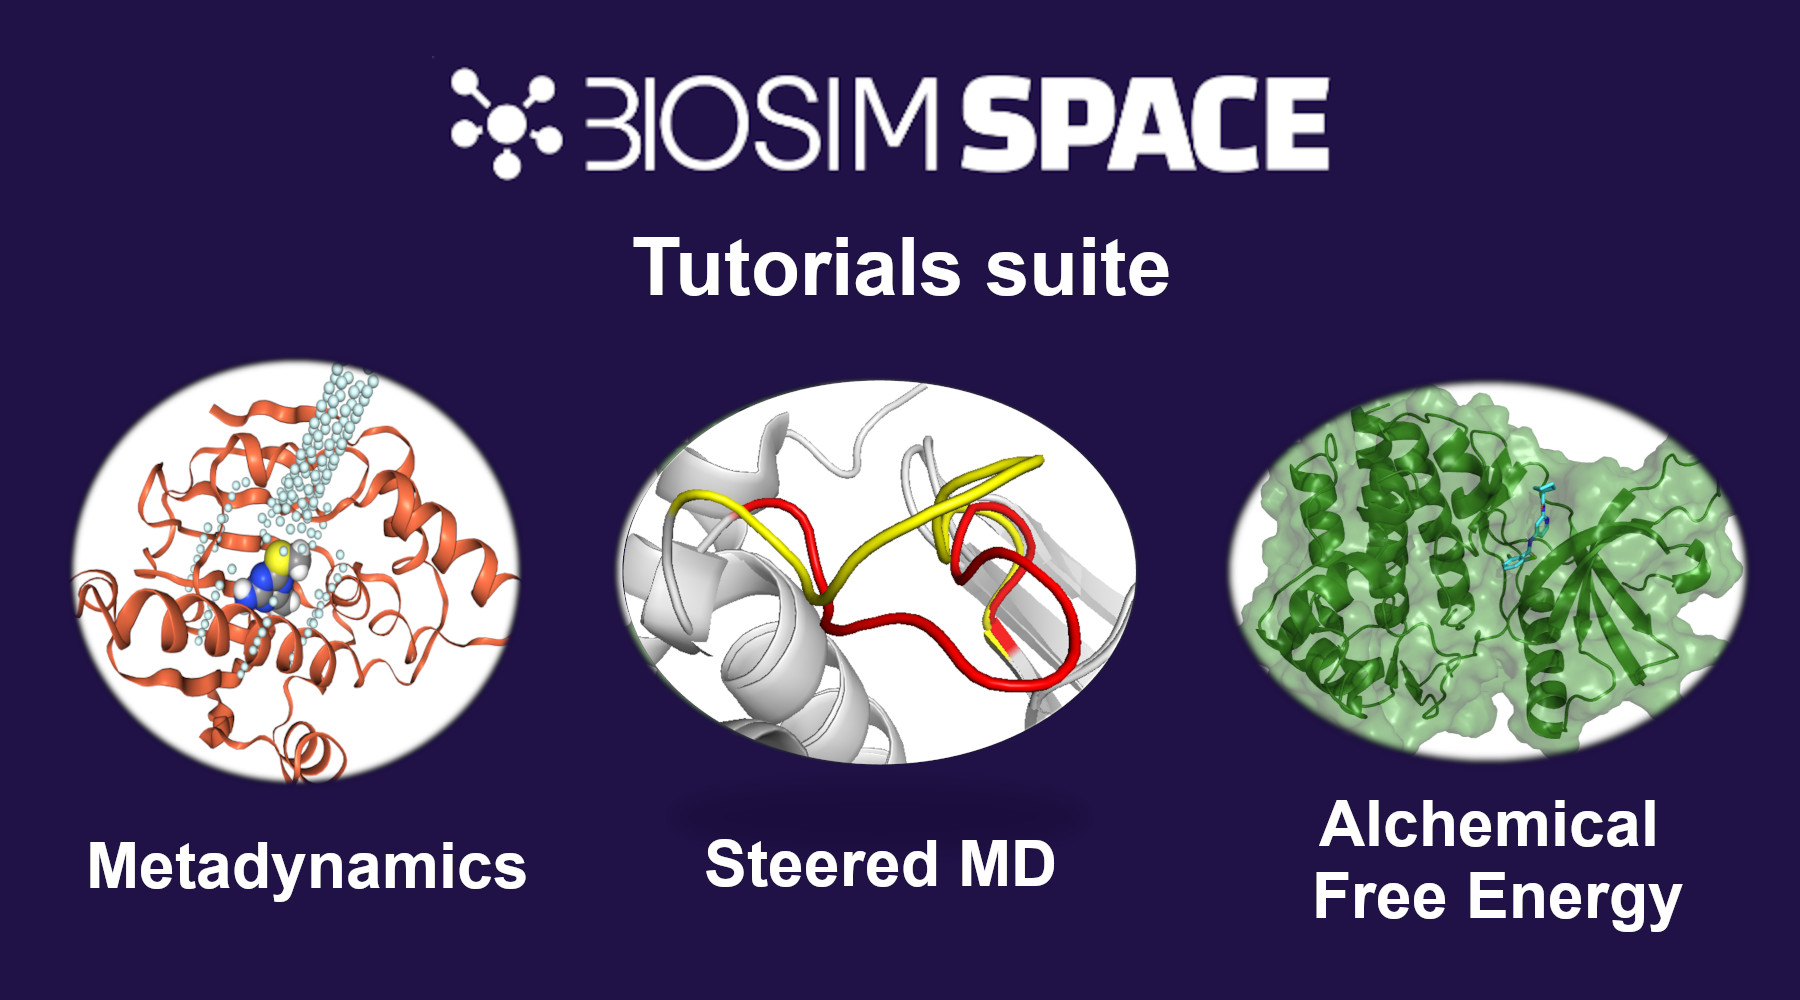 Three images depicting tutorials for BioSimSpace